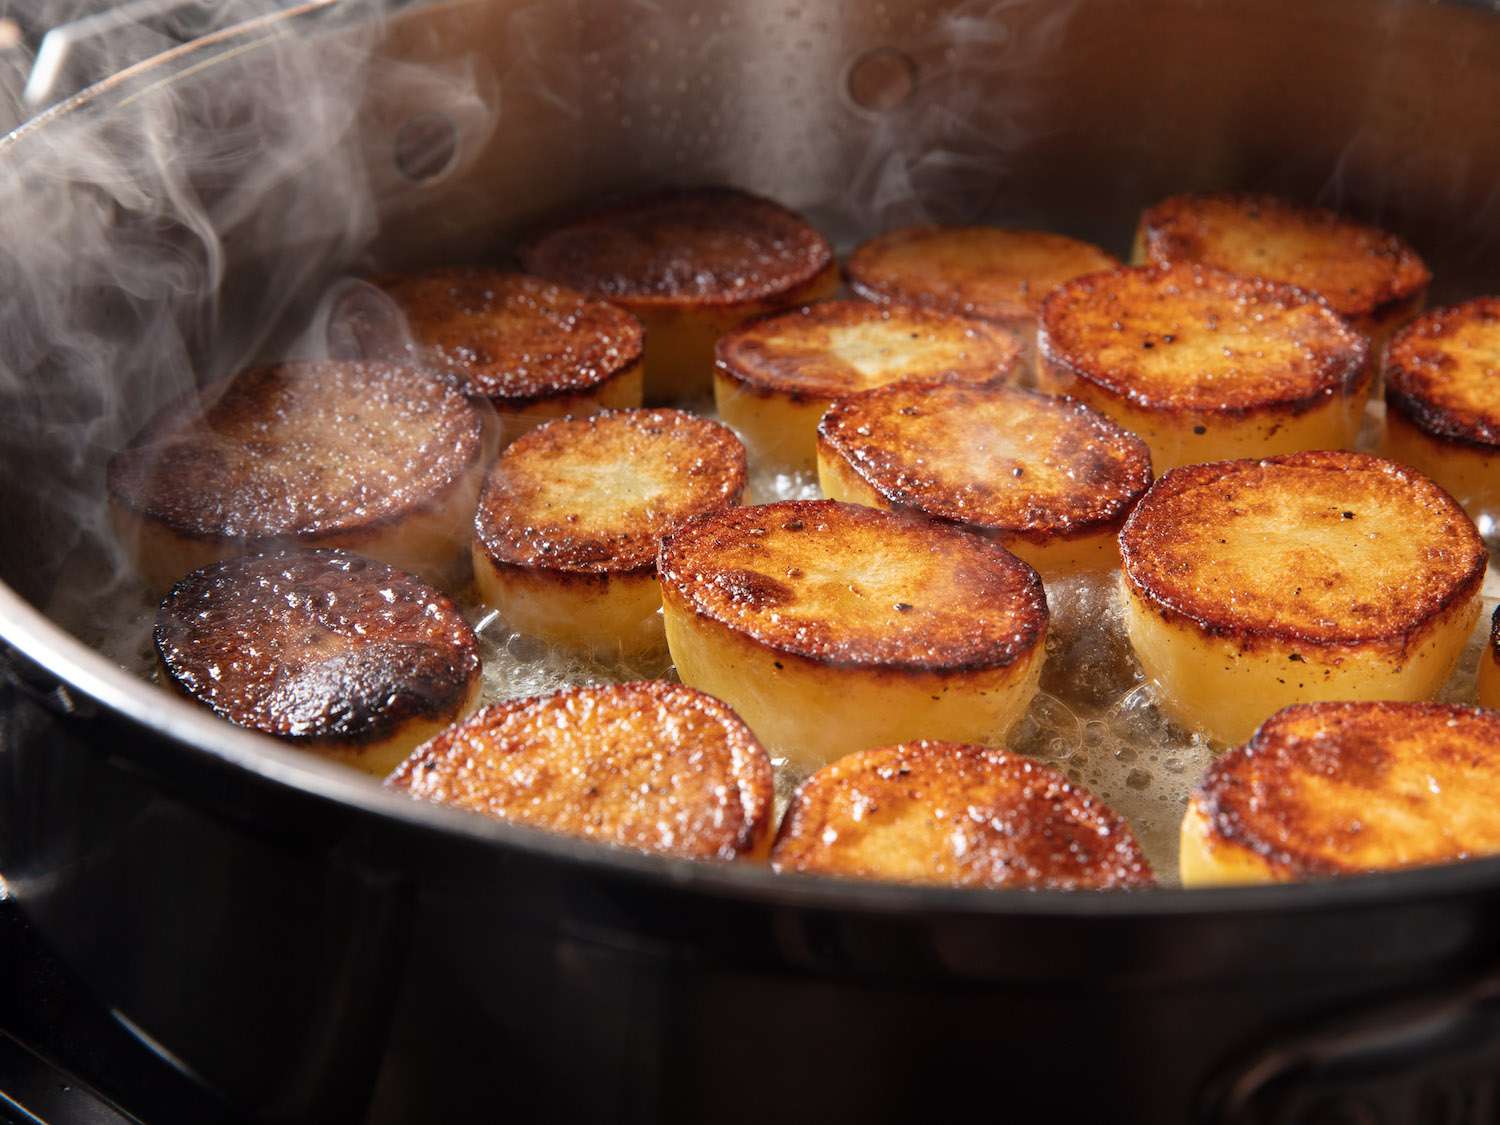 锅里的土豆一面烤焦，黄油冒着泡沫。